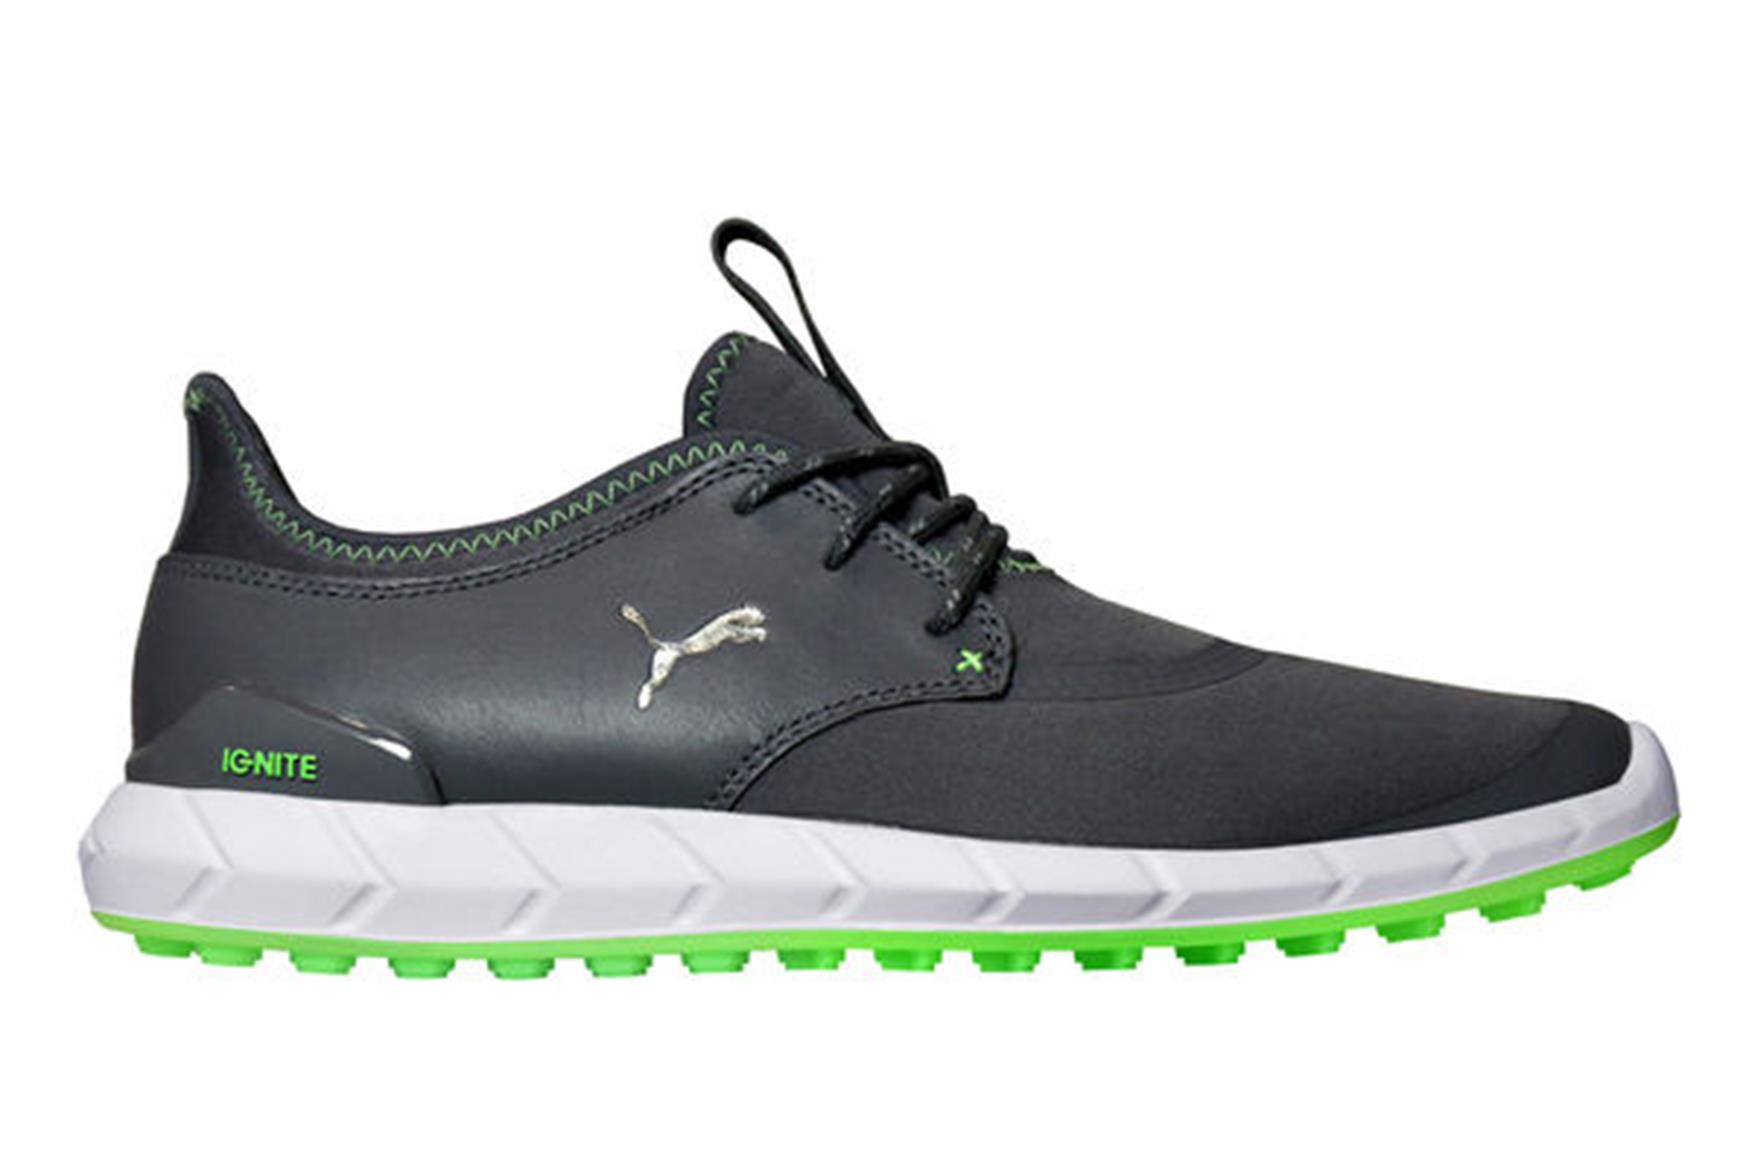 puma ignite sport pro golf shoes review